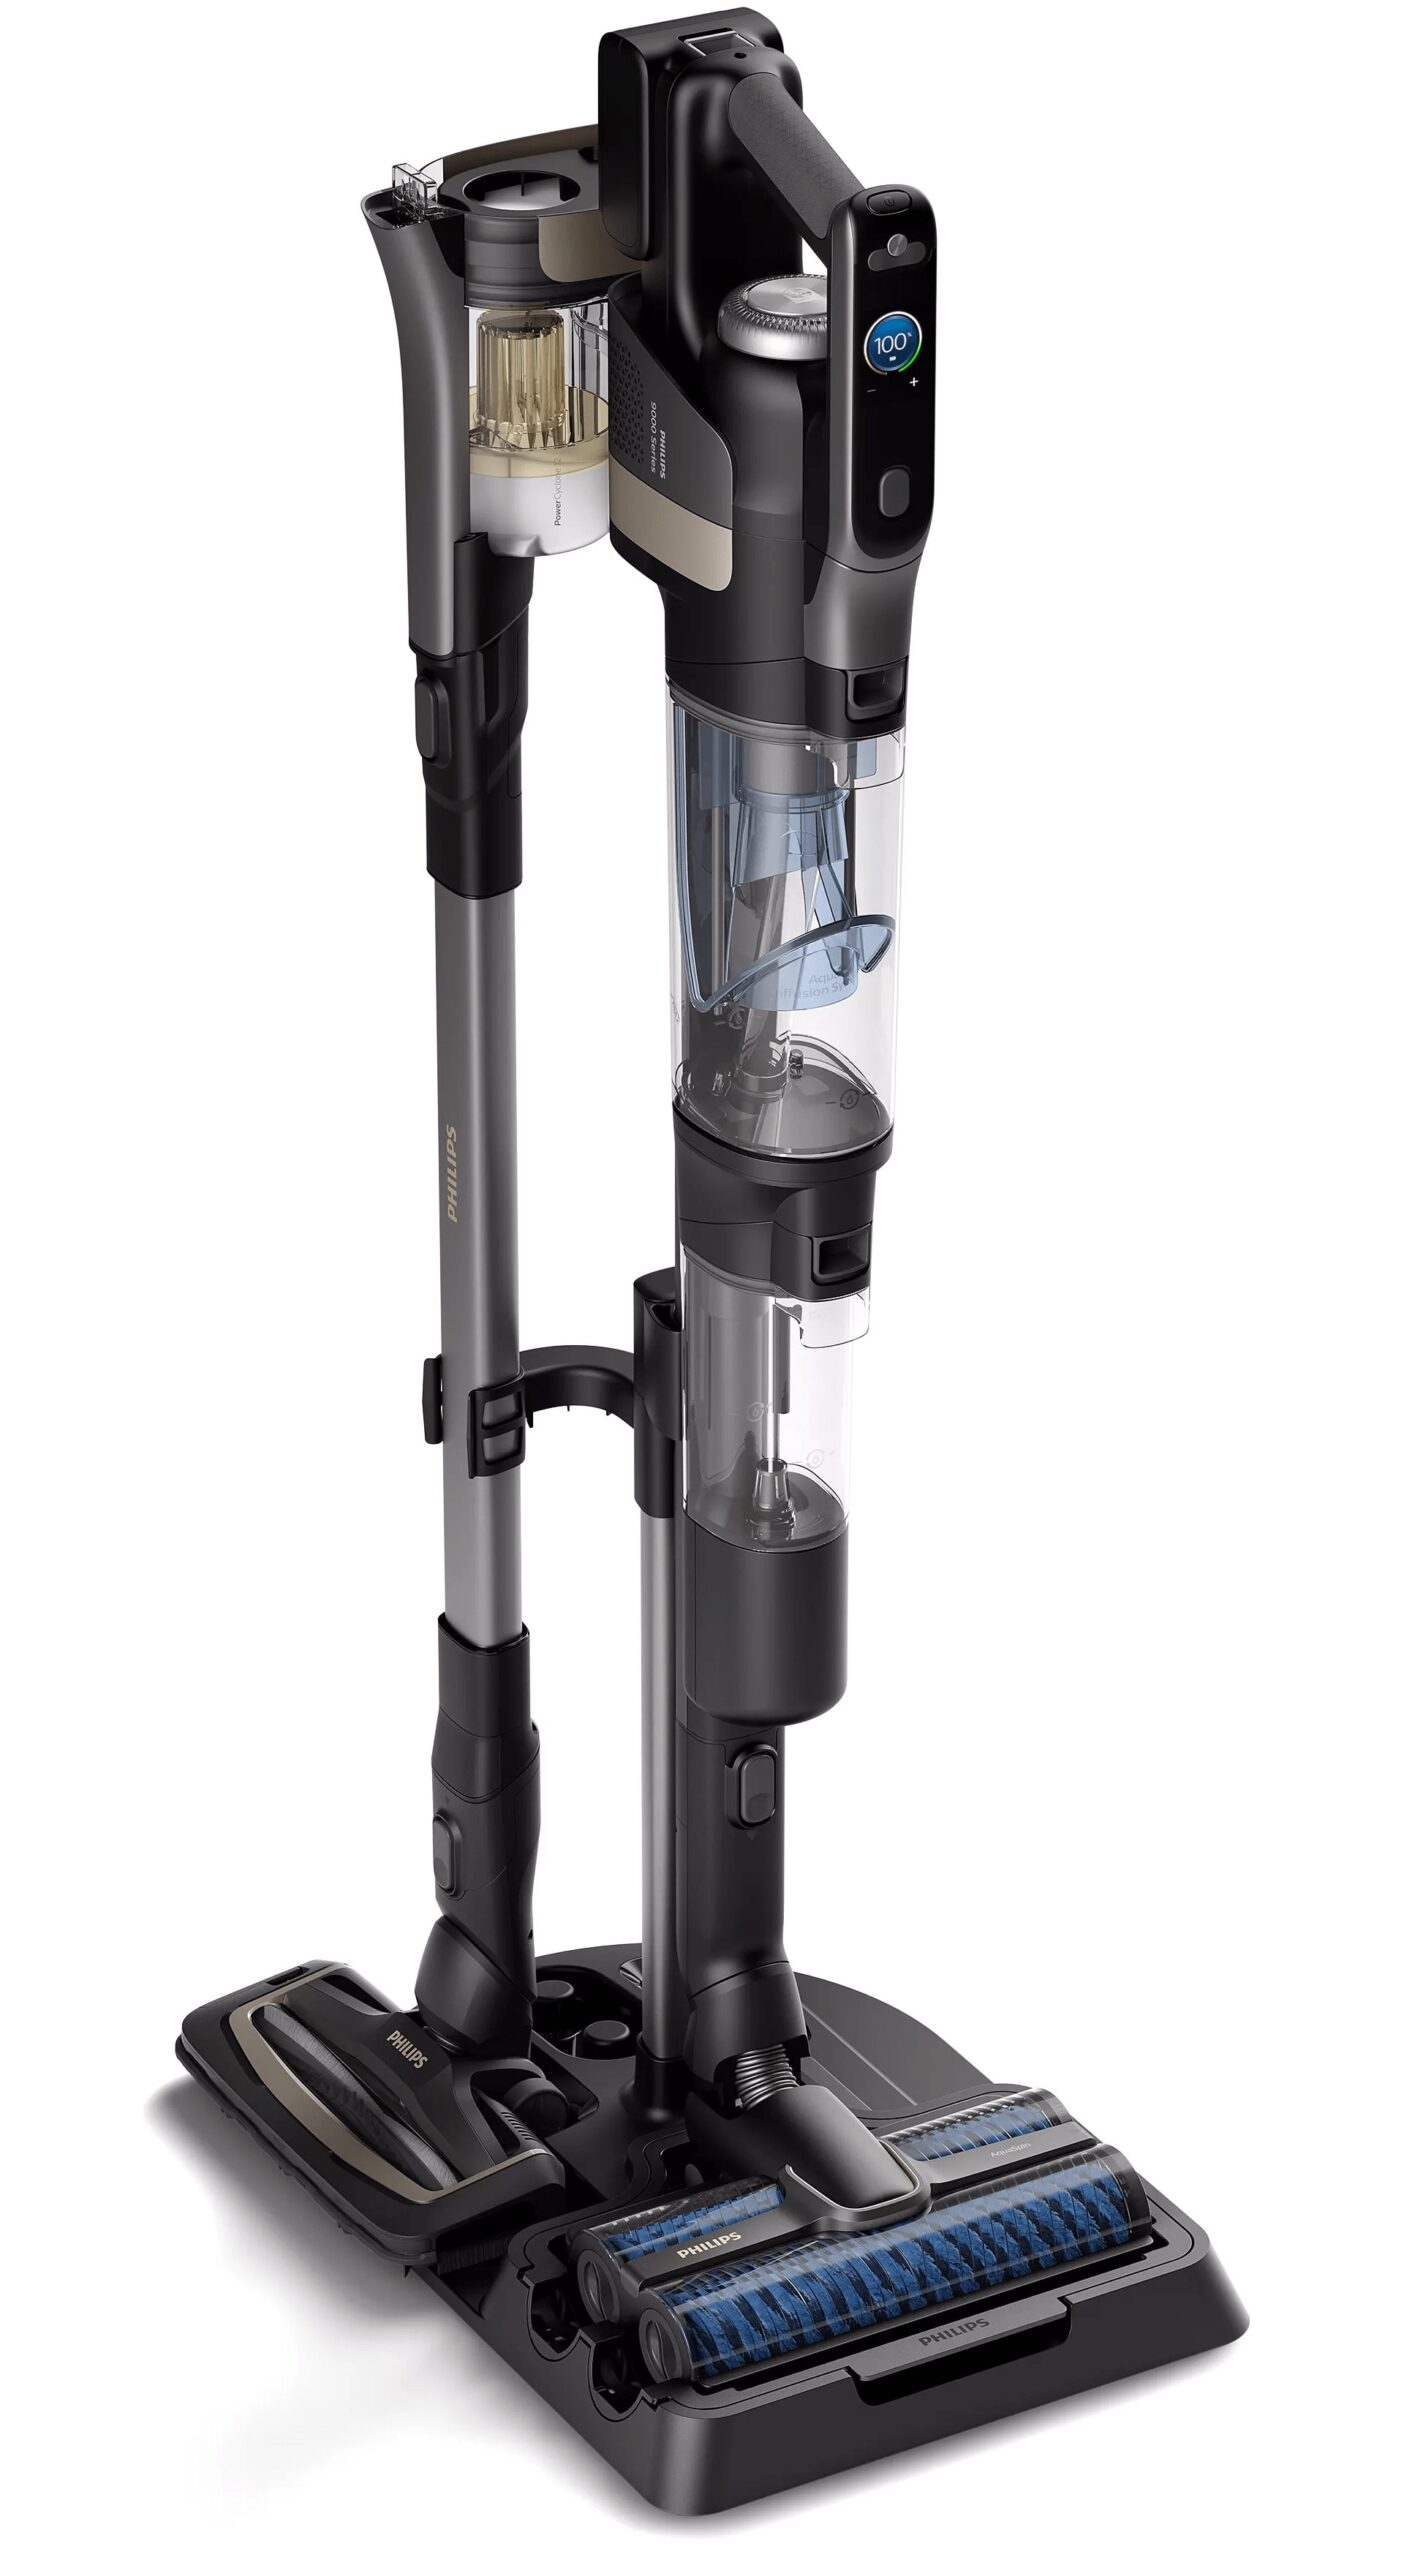 Philips AquaTrio Cordless Wet & Dry Vacuum 9000